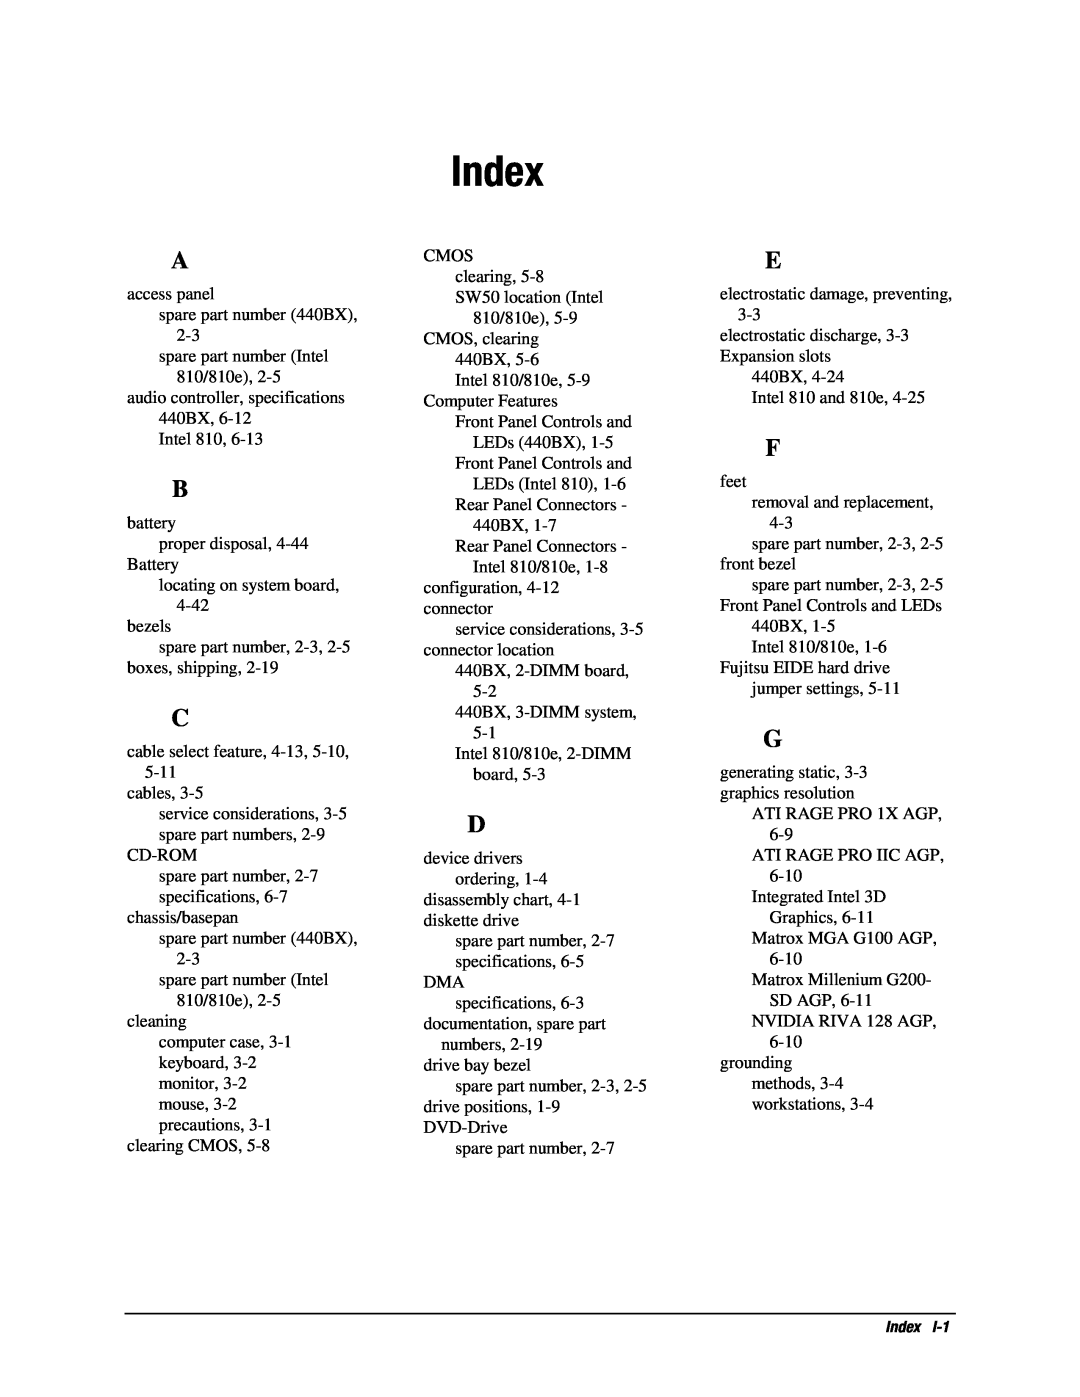 Compaq EP Series manual Index 